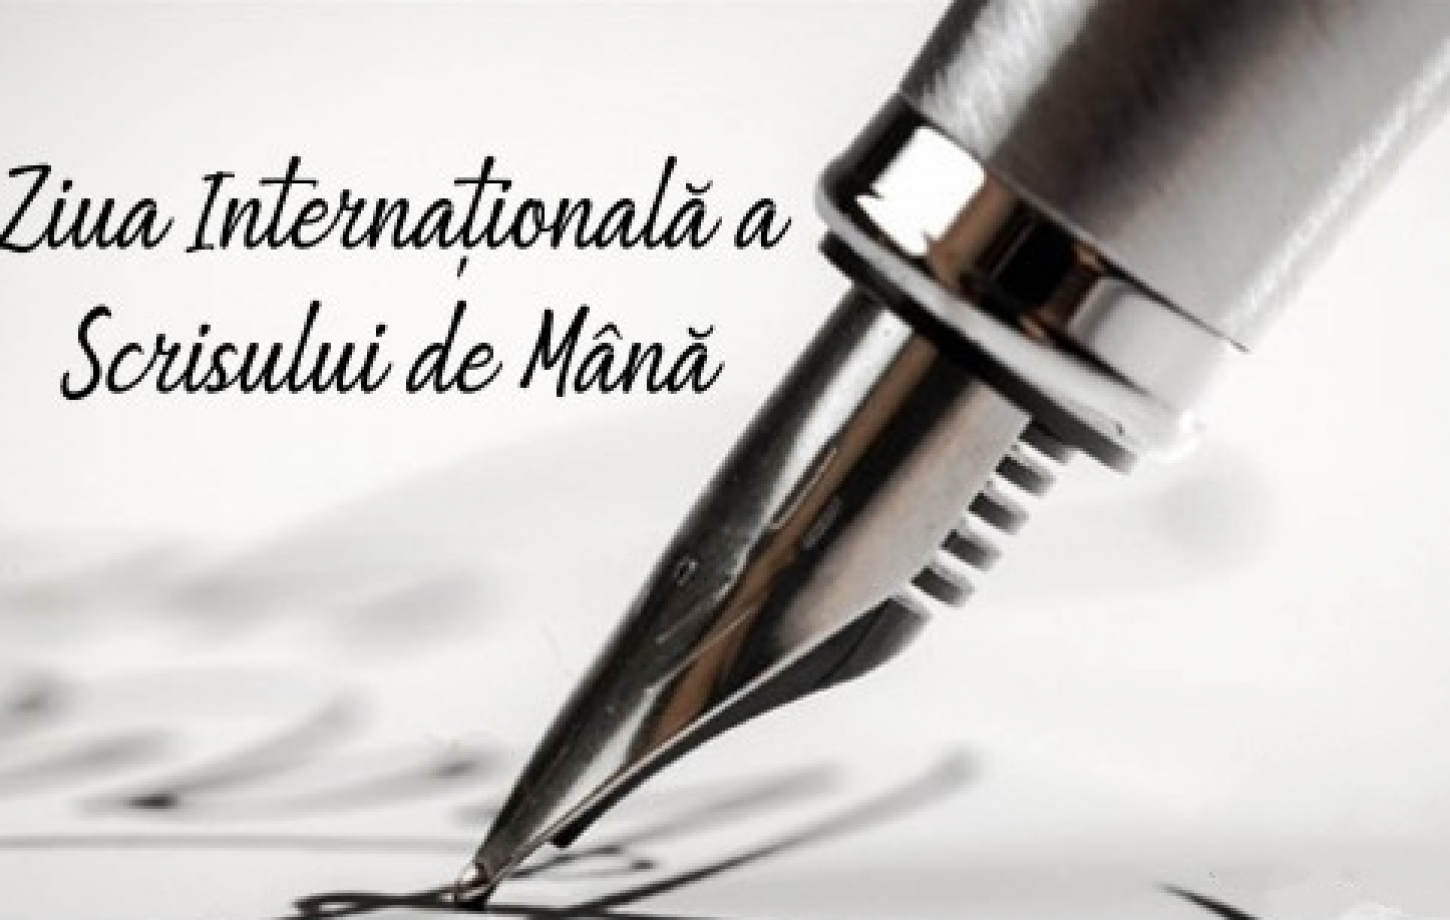 Ziua Internațională a Scrisului de mână! 